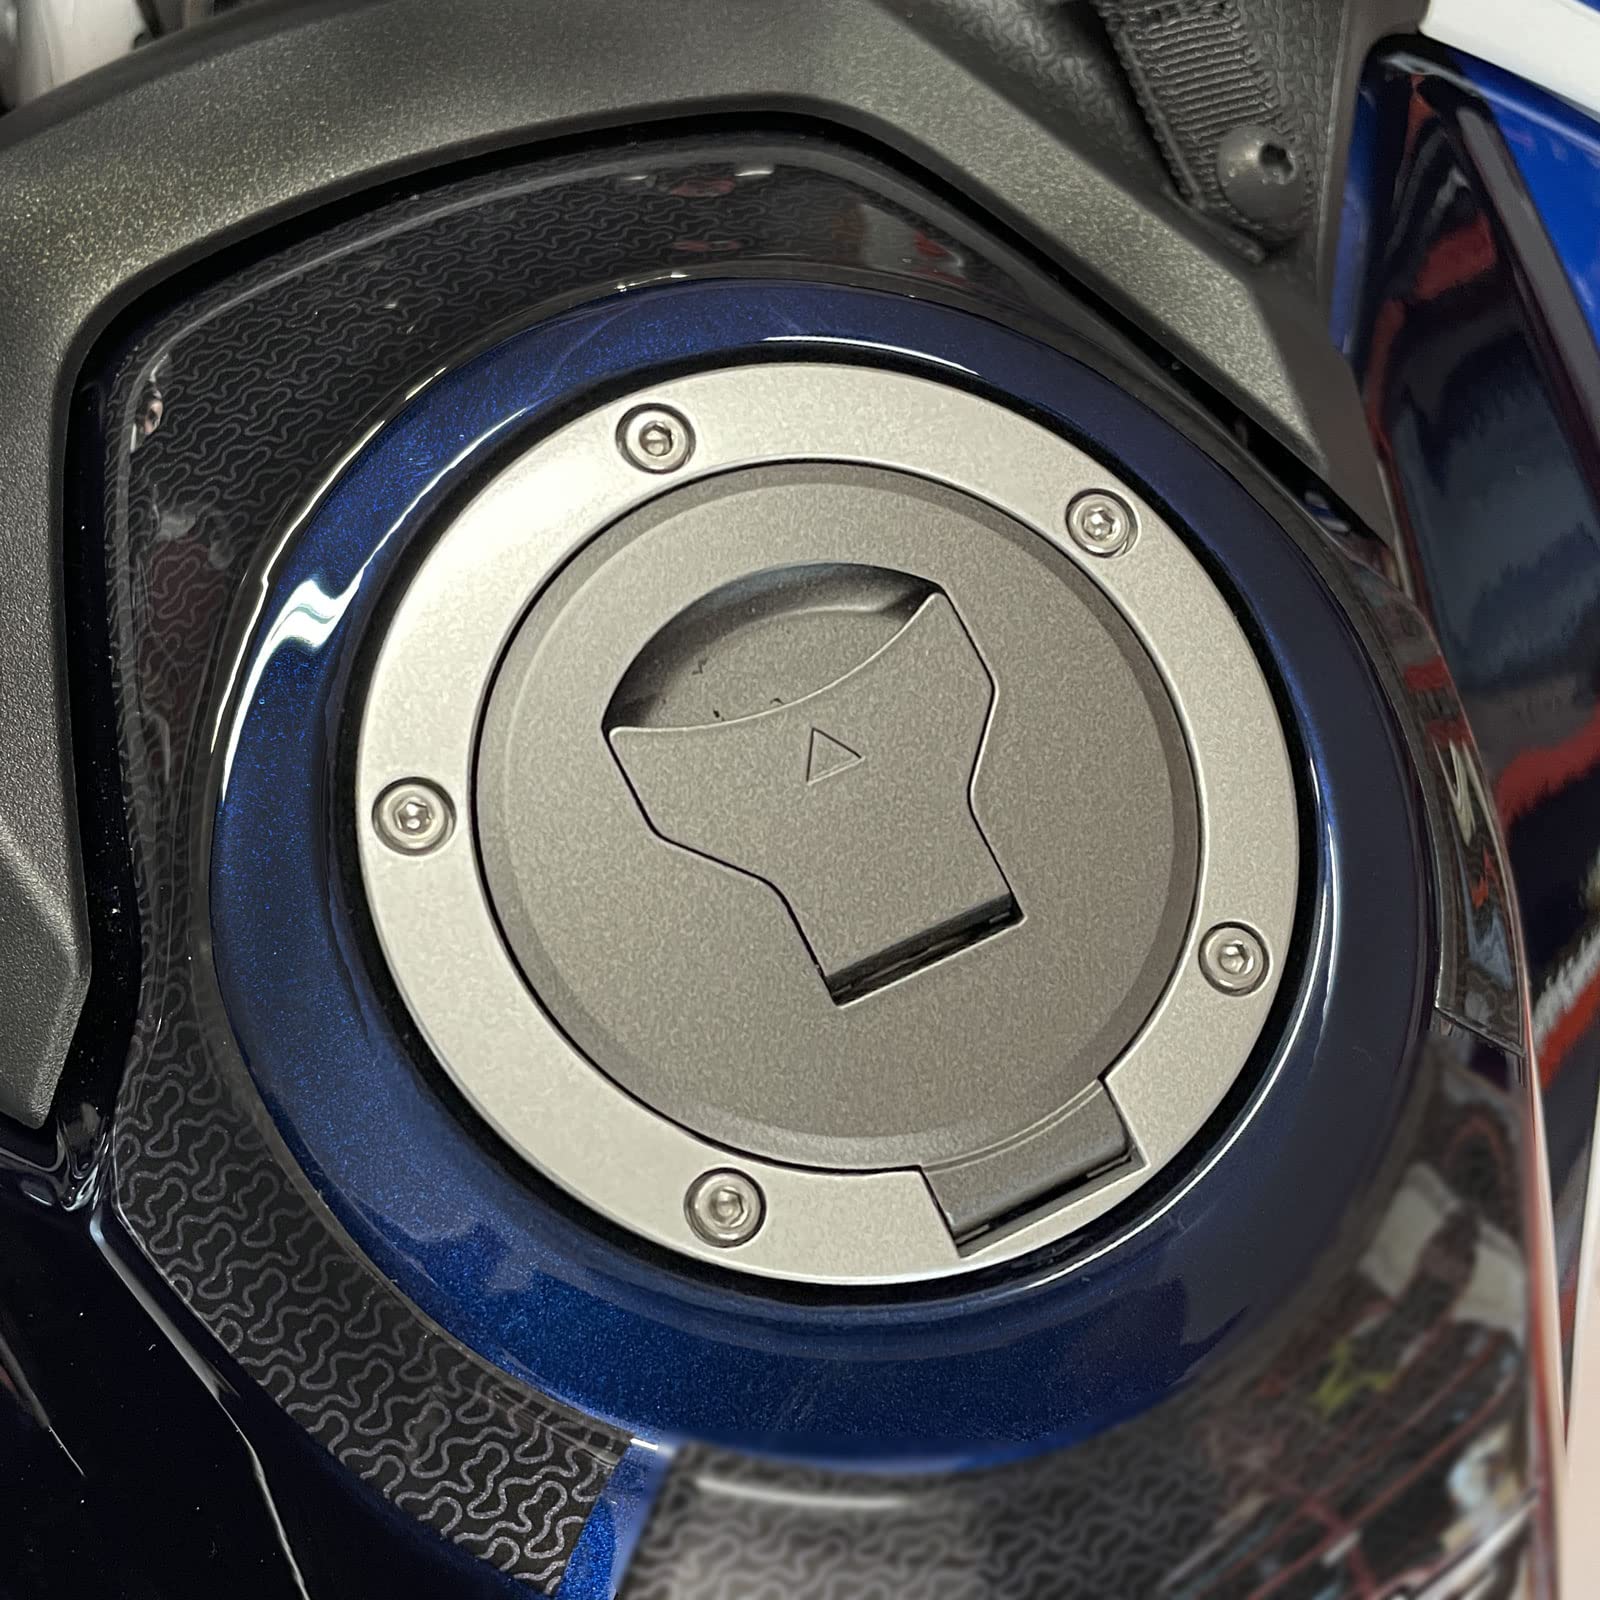 Resin Bike Aufkleber für Motorrad Kompatibel mit Honda Africa Twin CRF 1100 L 2022-2023. Schutz für den Kettenradbereich des Tanks vor Stößen und Kratzern. 3D-Harzklebstoff - Stickers - Made in Italy von Resin Bike